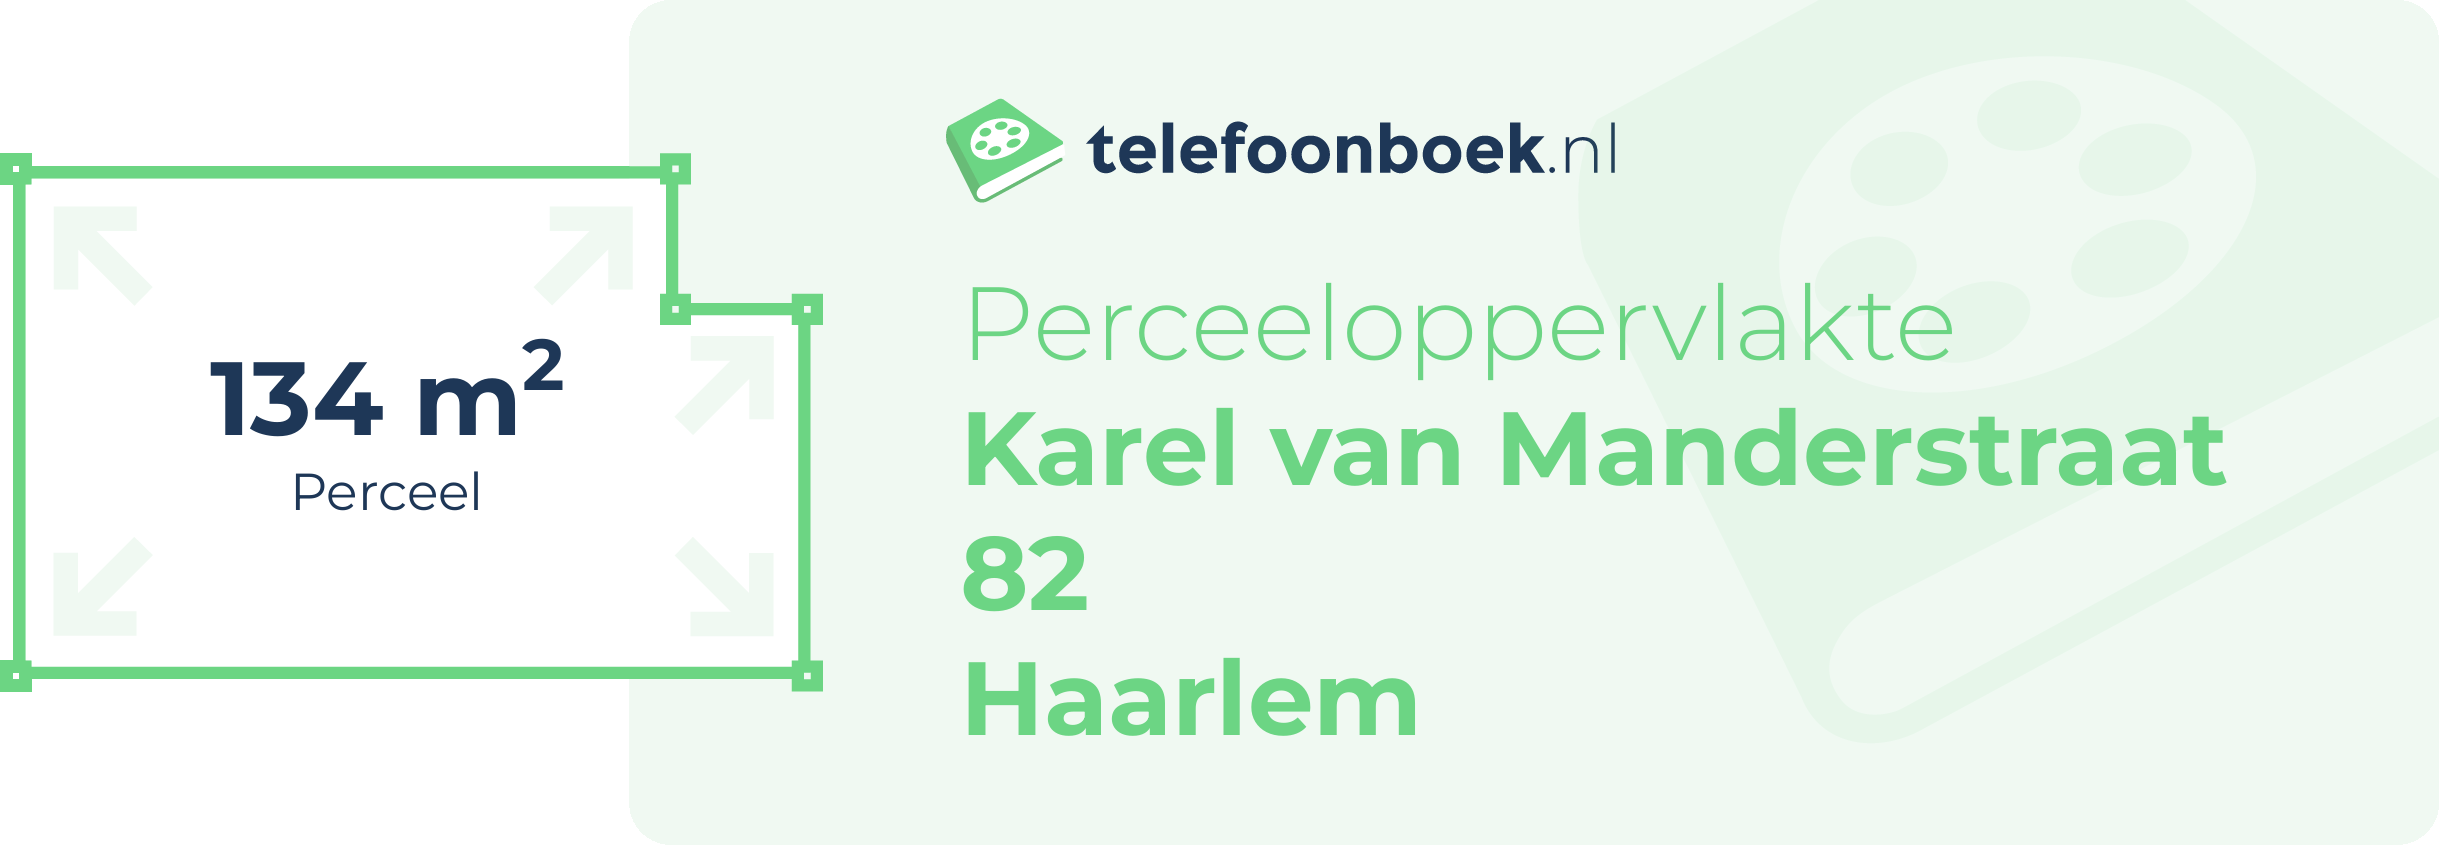 Perceeloppervlakte Karel Van Manderstraat 82 Haarlem